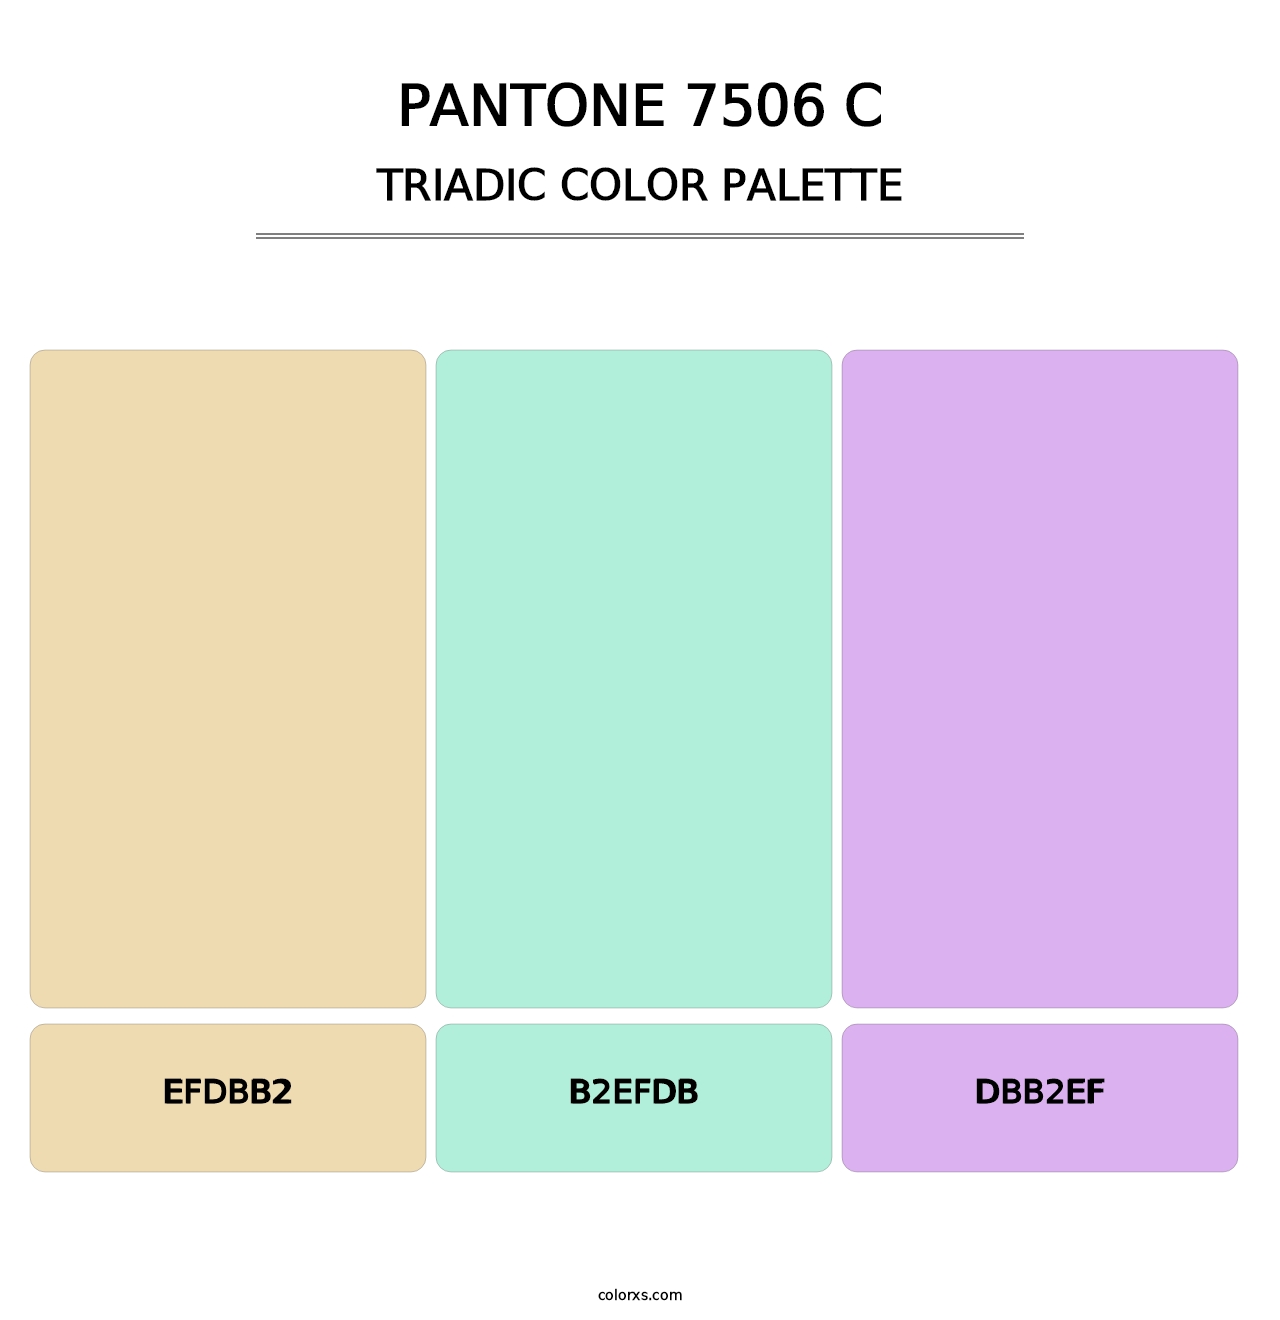 PANTONE 7506 C - Triadic Color Palette